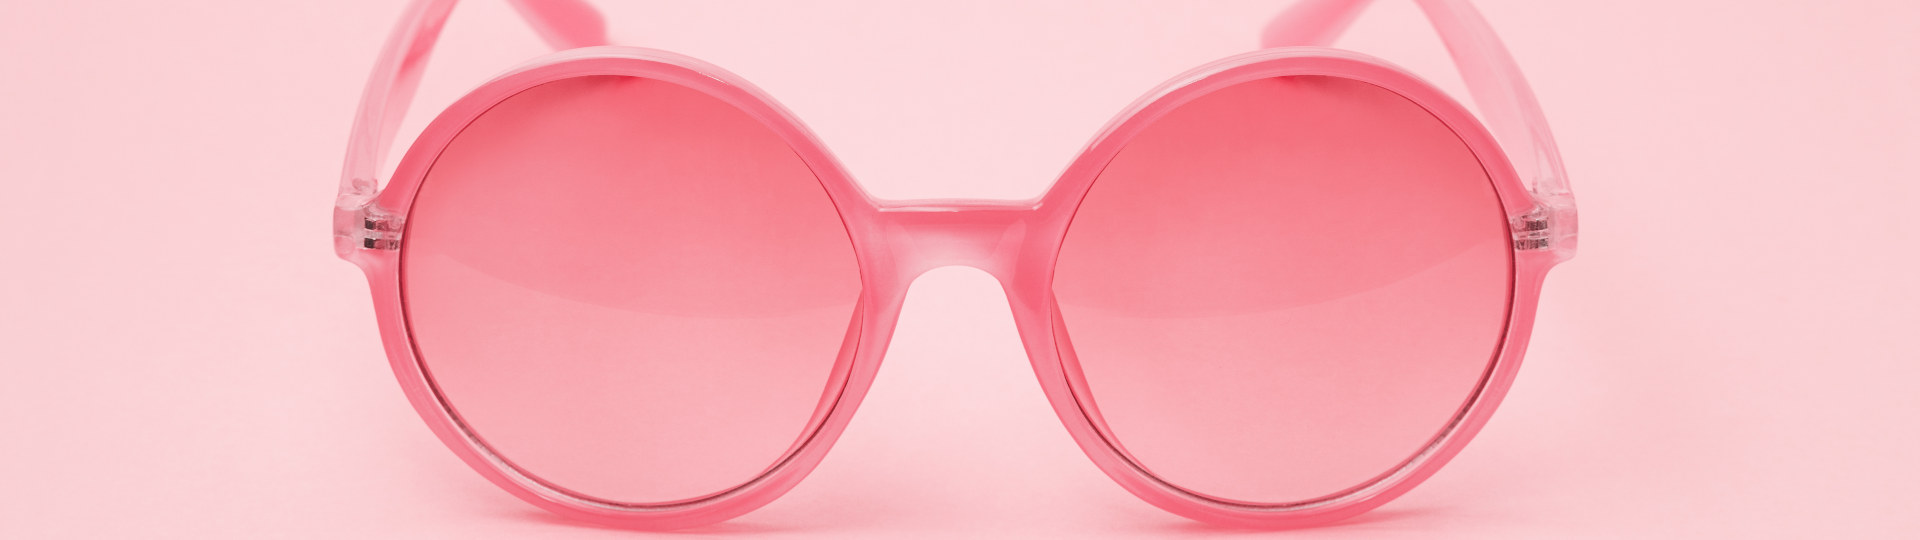 Eine Rosarote Brille - verliebt sein, alles durch die rosarote Brille sehen